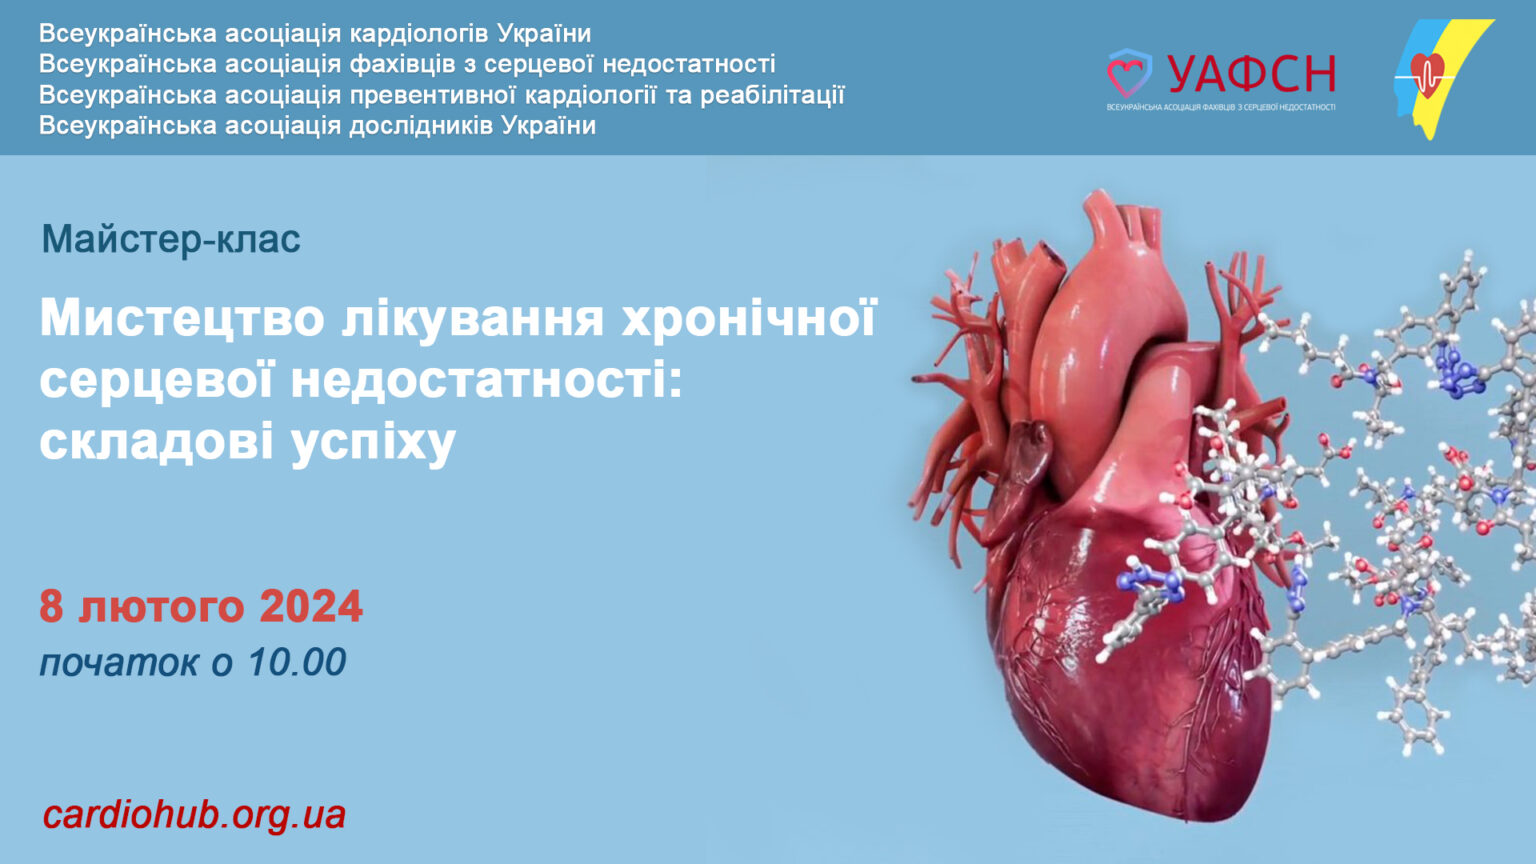 08.02.2024 : Майстер-клас: Мистецтво лікування хронічної серцевої недостатності: складові успіху